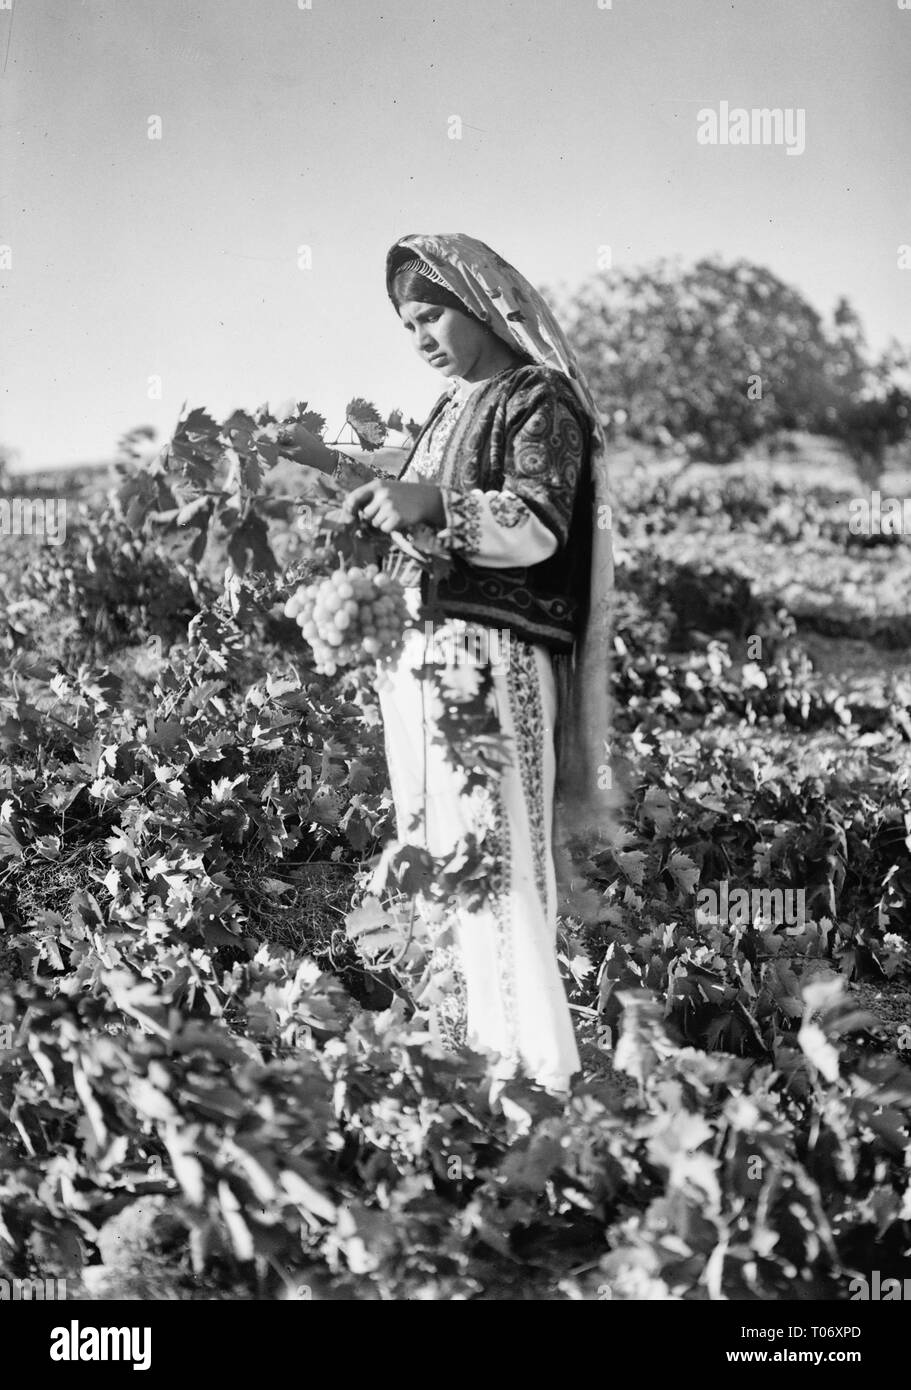 Un paysan tenant une grappe de raisins dans une vigne de Judée, vers 1930 Banque D'Images